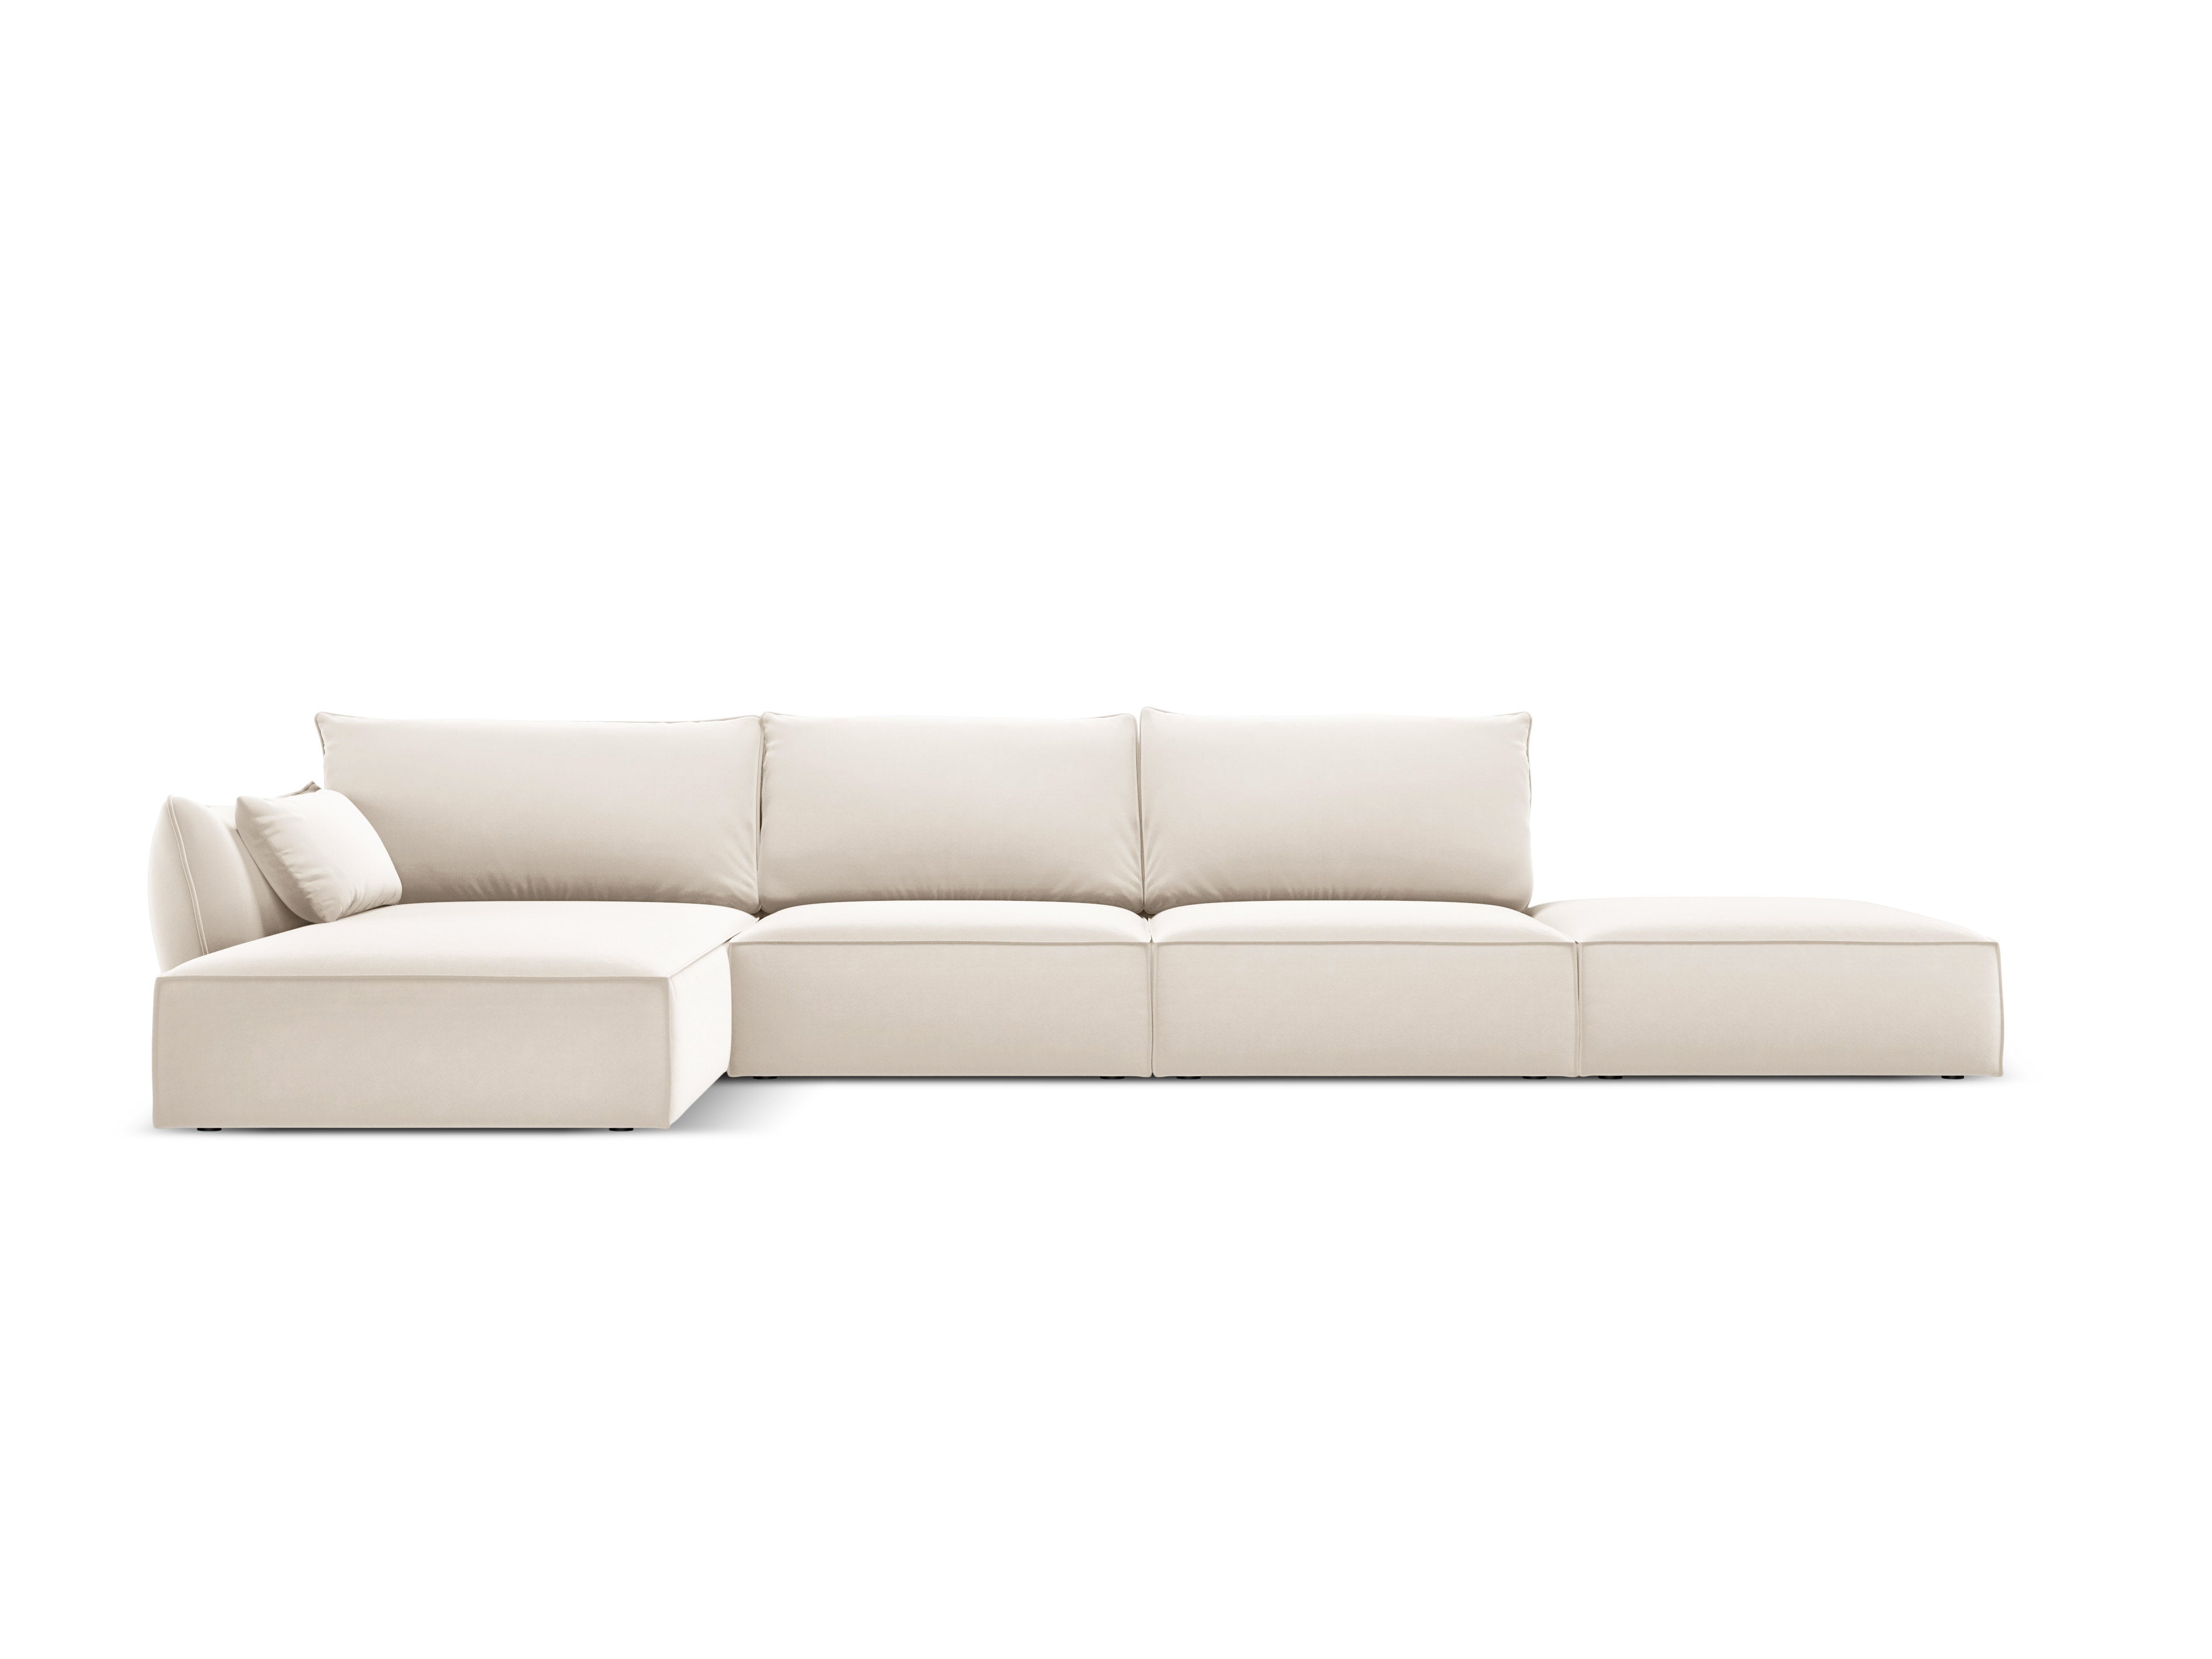 Velvet Left Corner Sofa, "Vanda", 5 Seats, 386x166x85
Made in Europe, Mazzini Sofas, Eye on Design